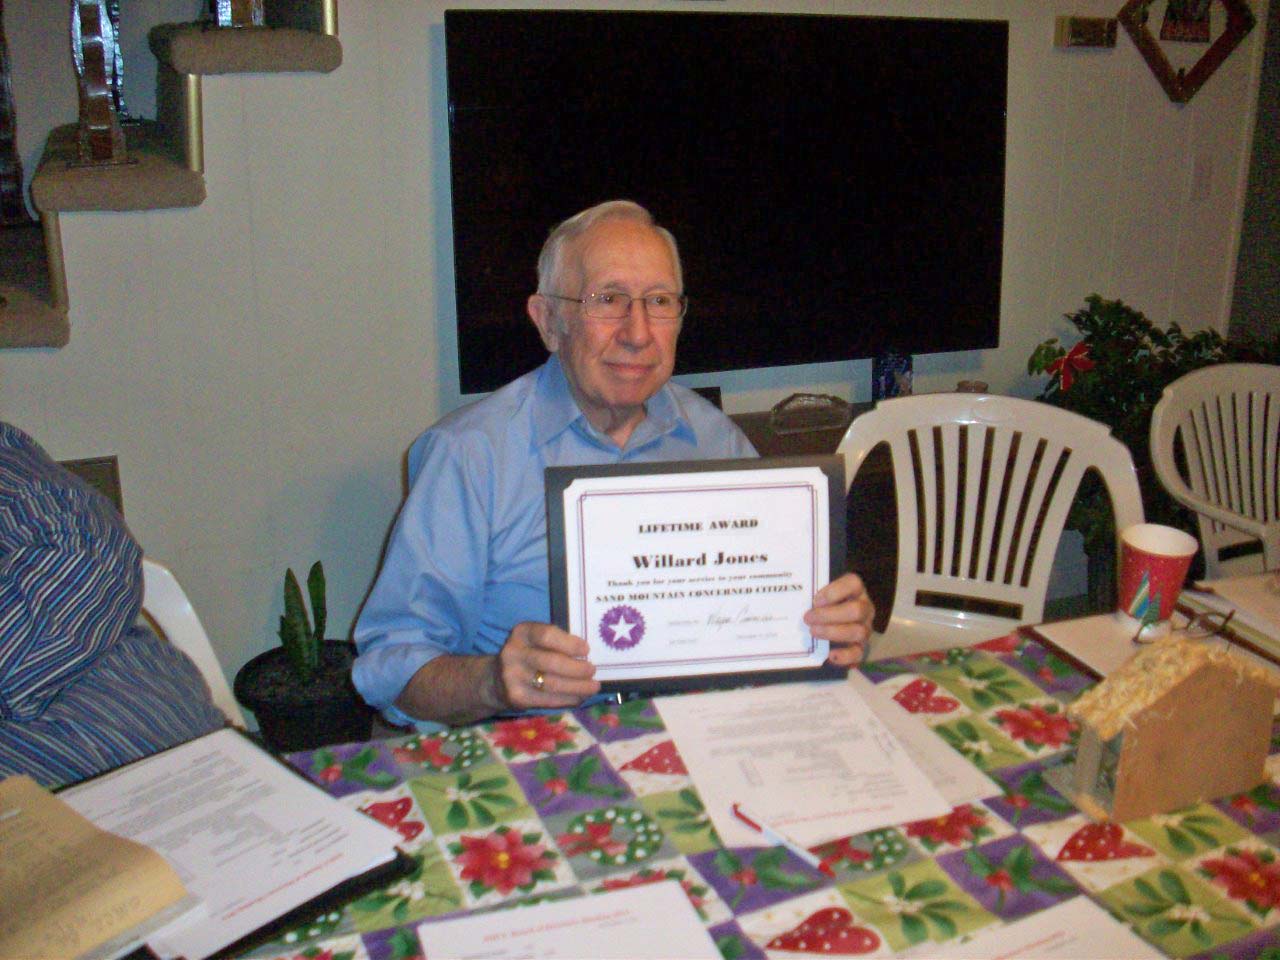 Willard Jones holding up a lifetime achievement award